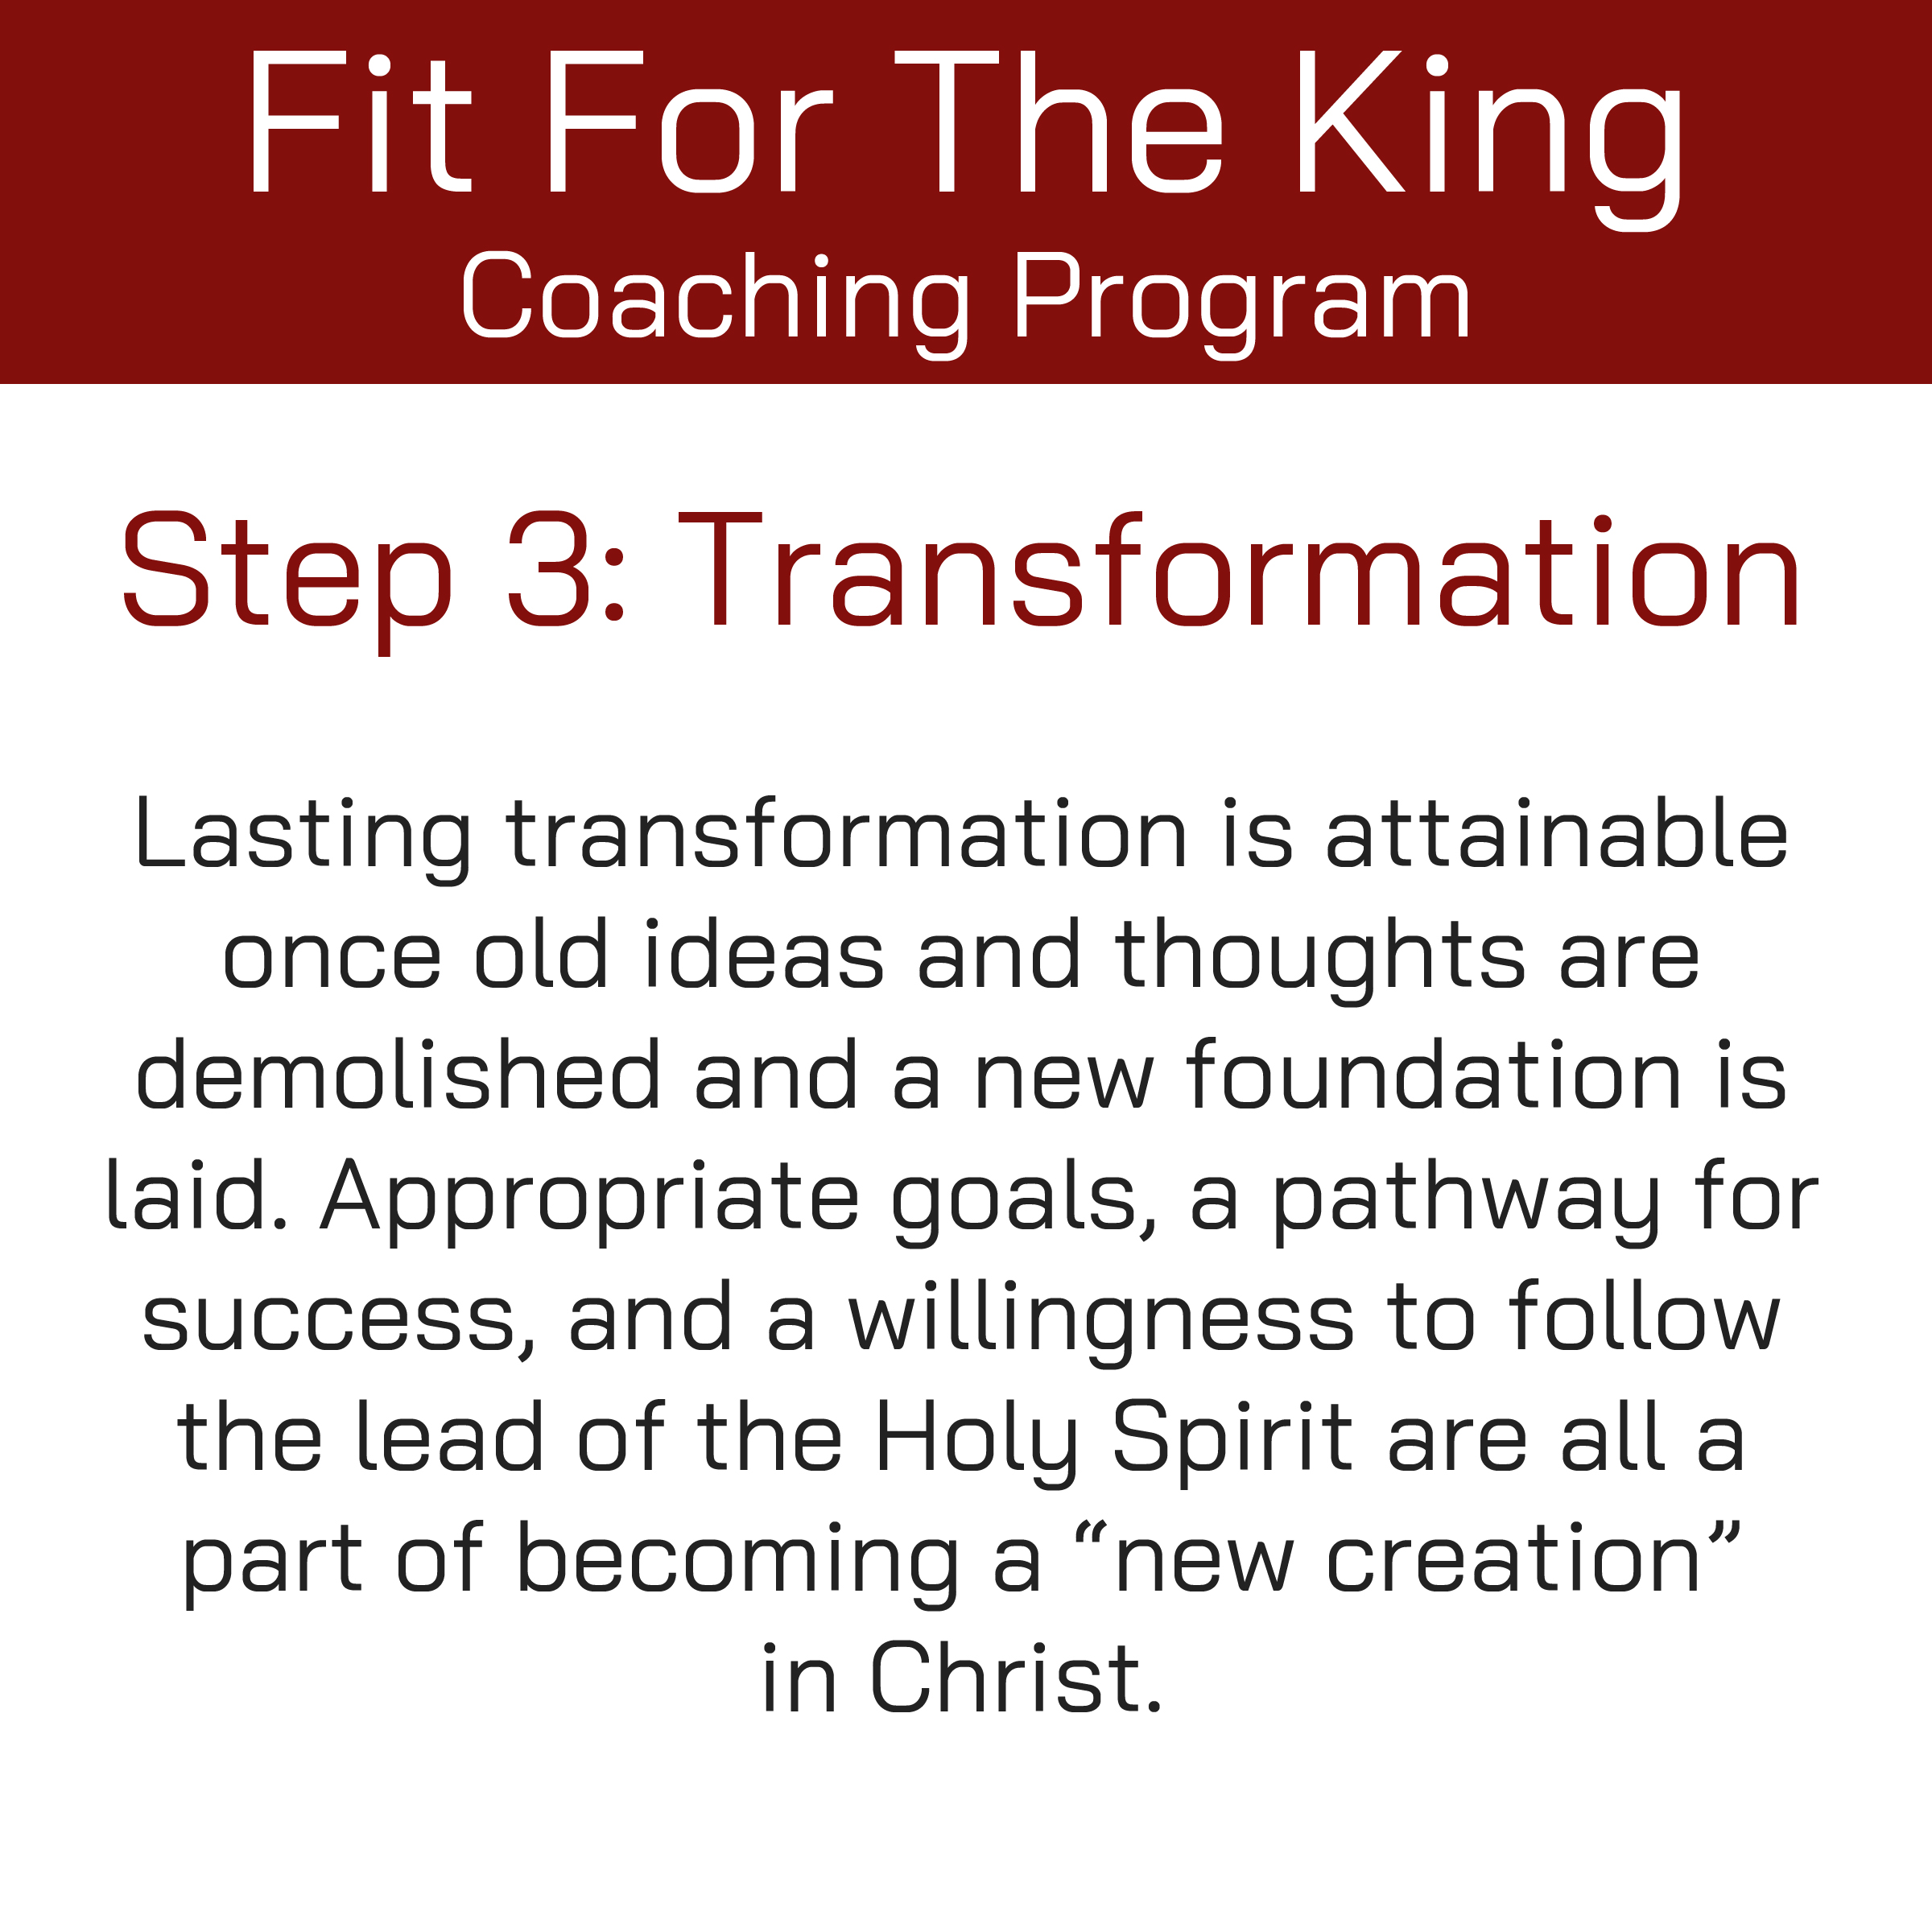 FFTK Coaching Program - Transformation